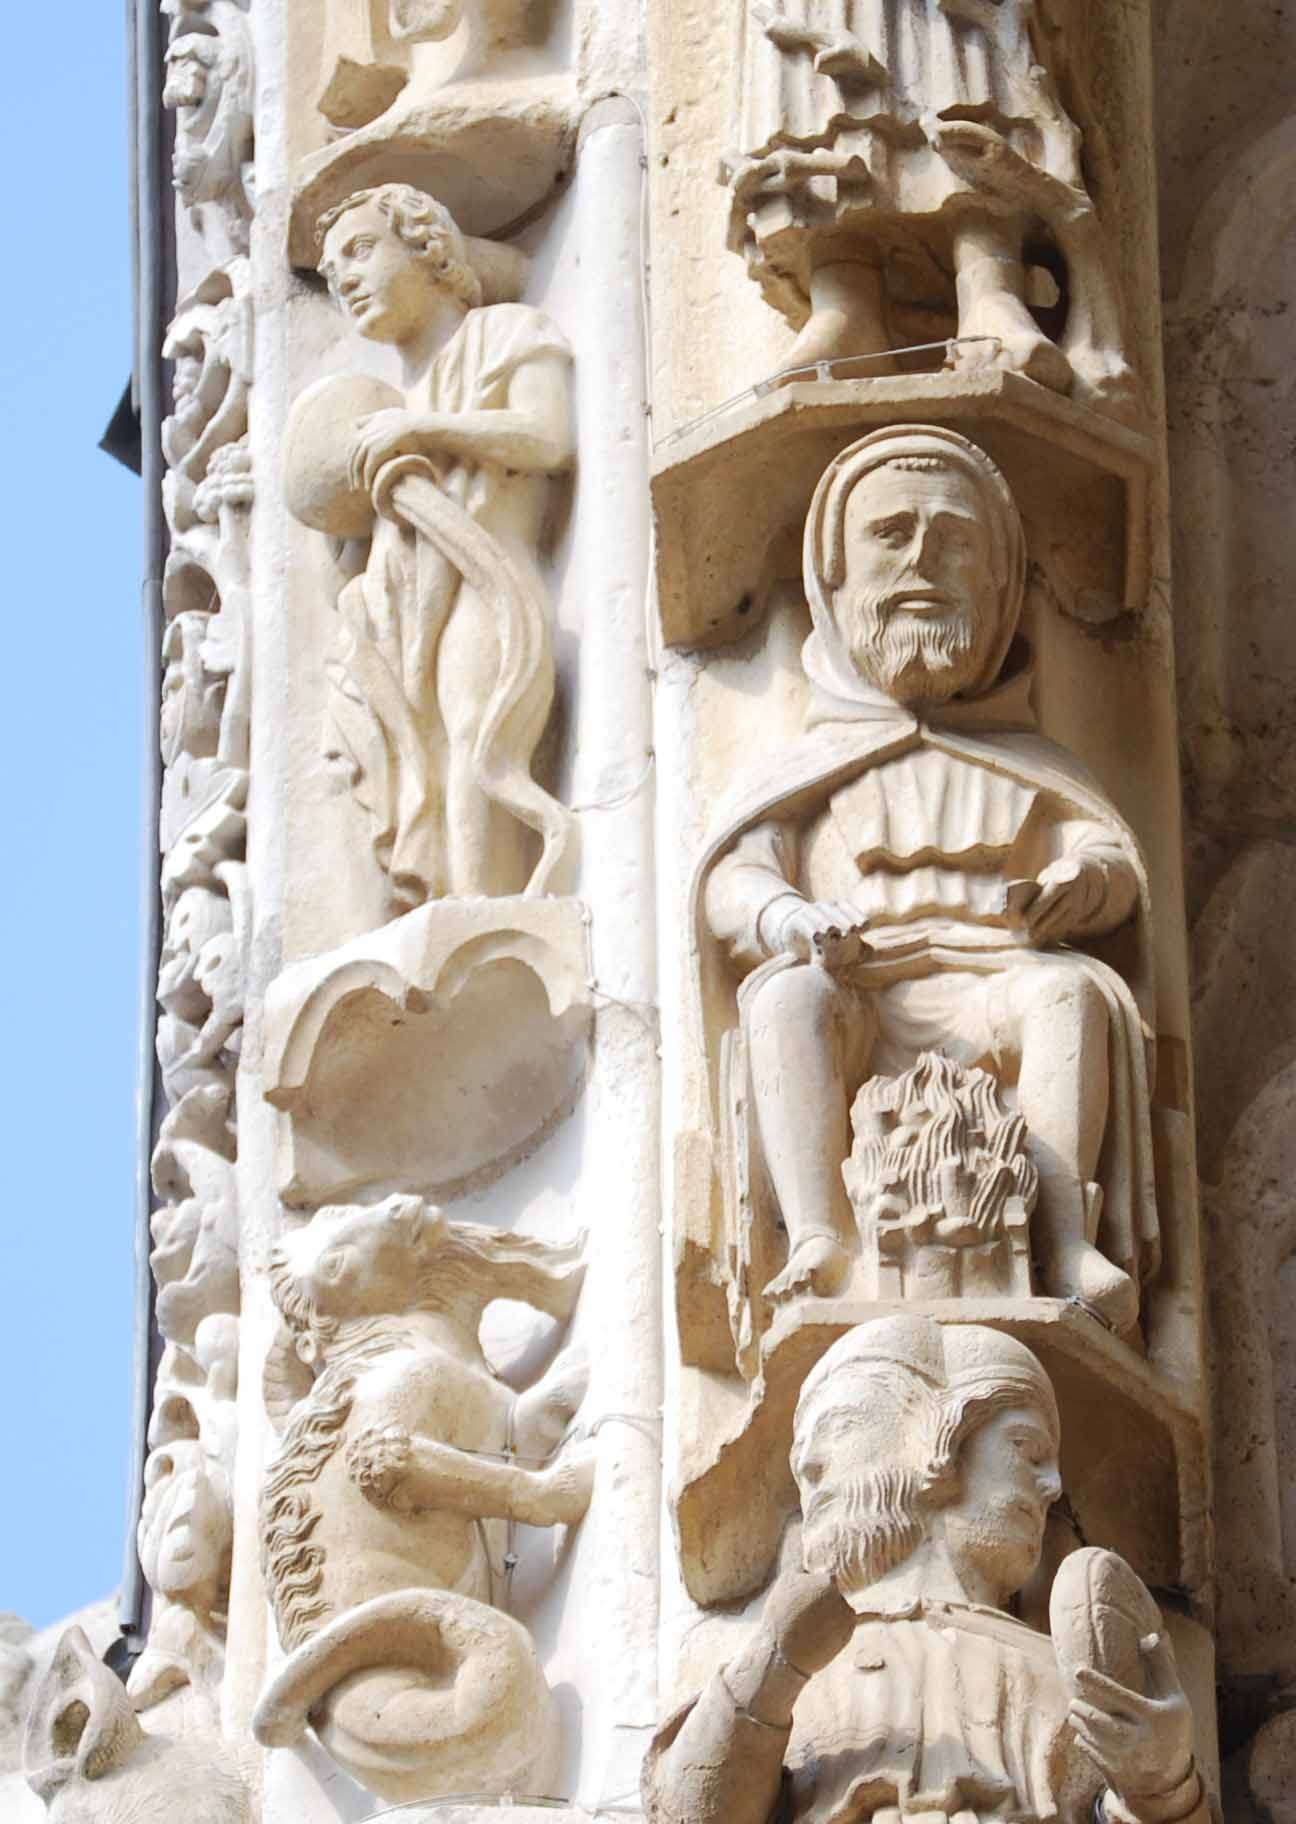 Los pórticos y la escultura en la catedral de Chartres - Chartres: Arte, espiritualidad y esoterismo. (5)